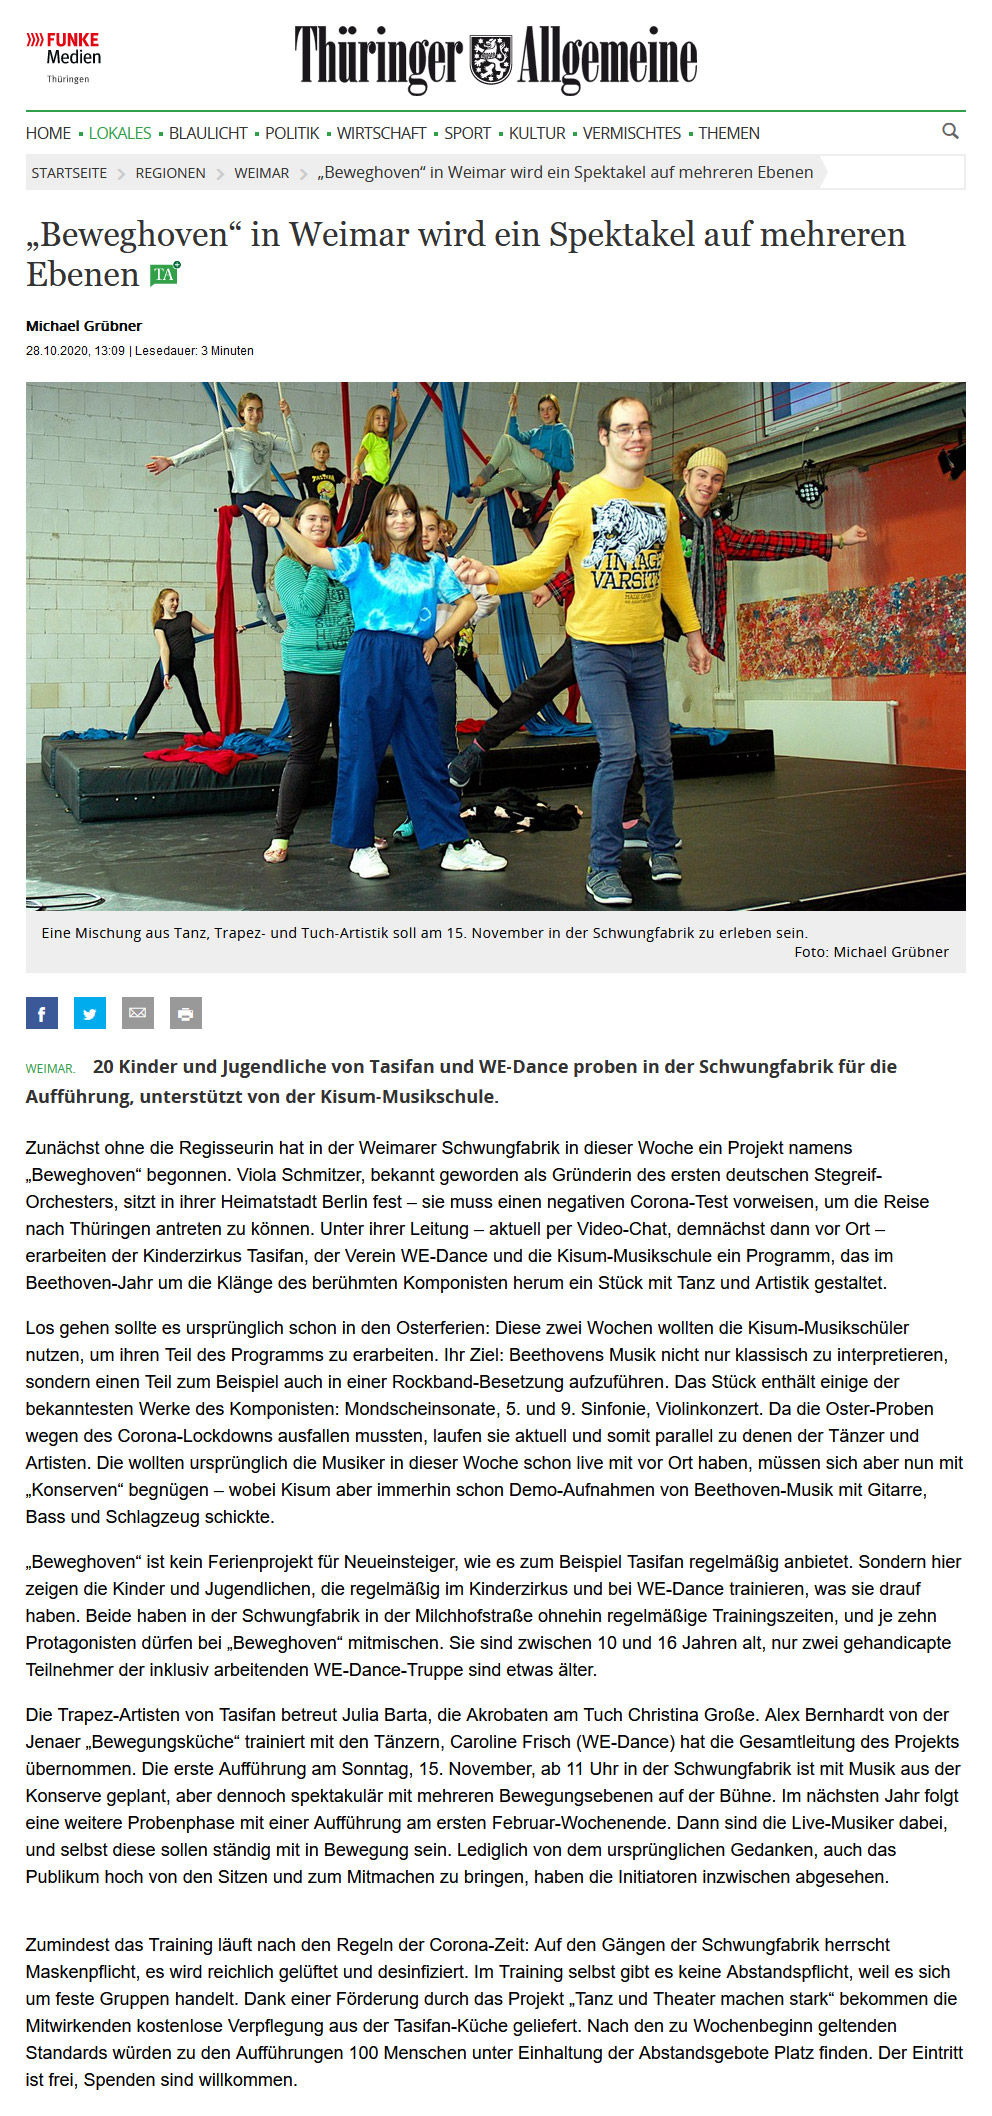 28.10.2020, Thüringer Allgemeine (Web)